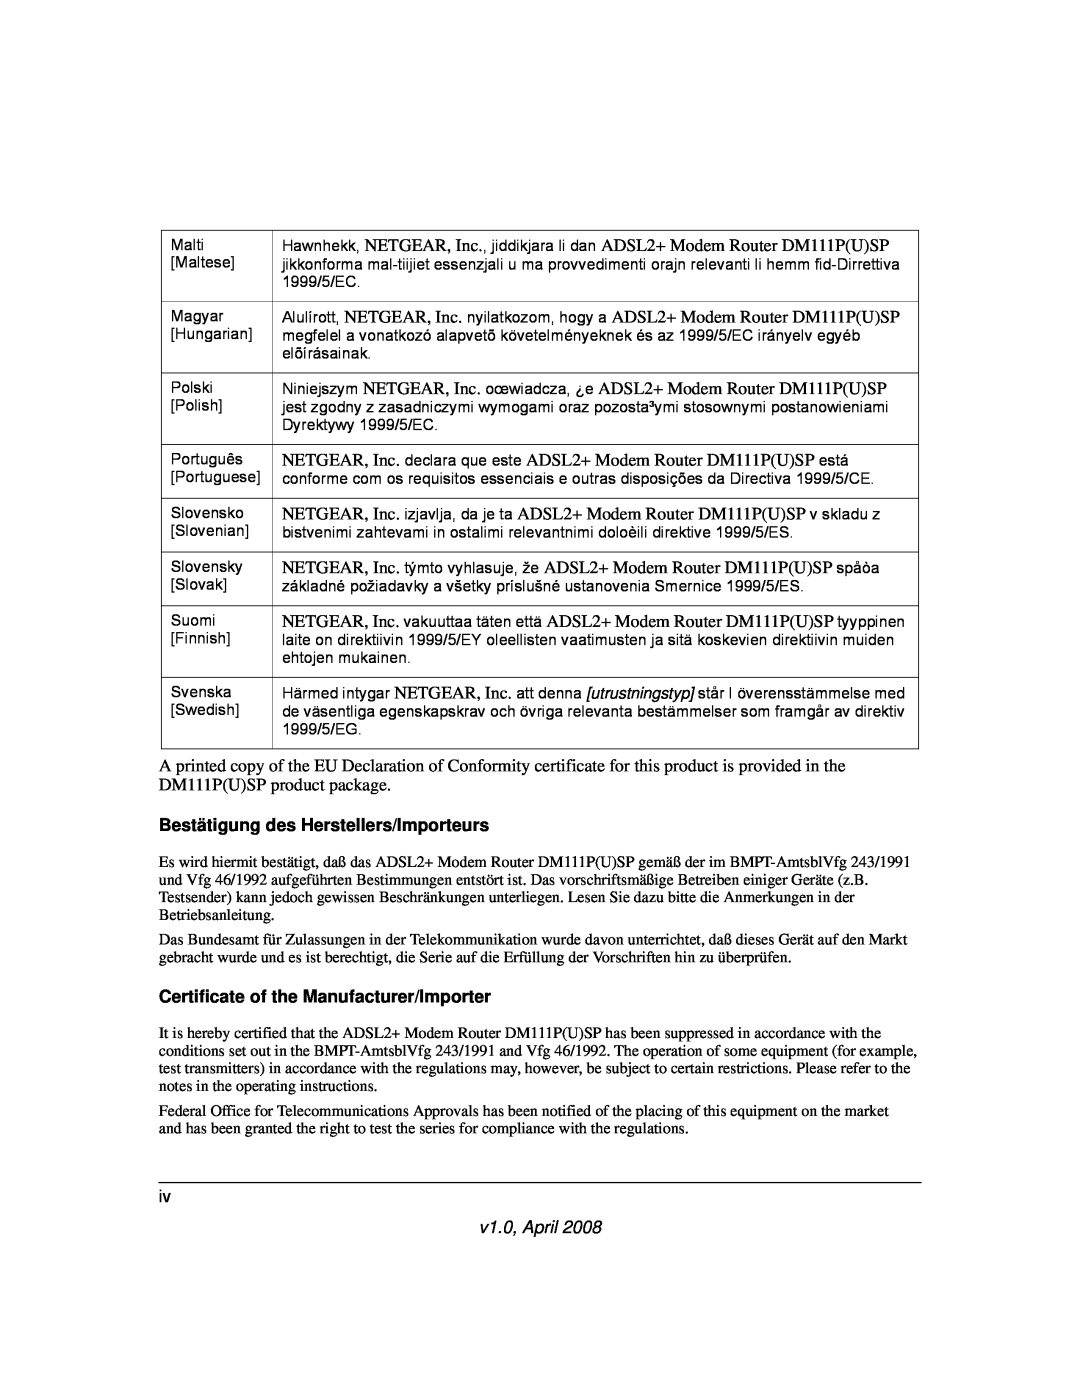 NETGEAR ADSL2+ user manual Bestätigung des Herstellers/Importeurs, Certificate of the Manufacturer/Importer, v1.0, April 